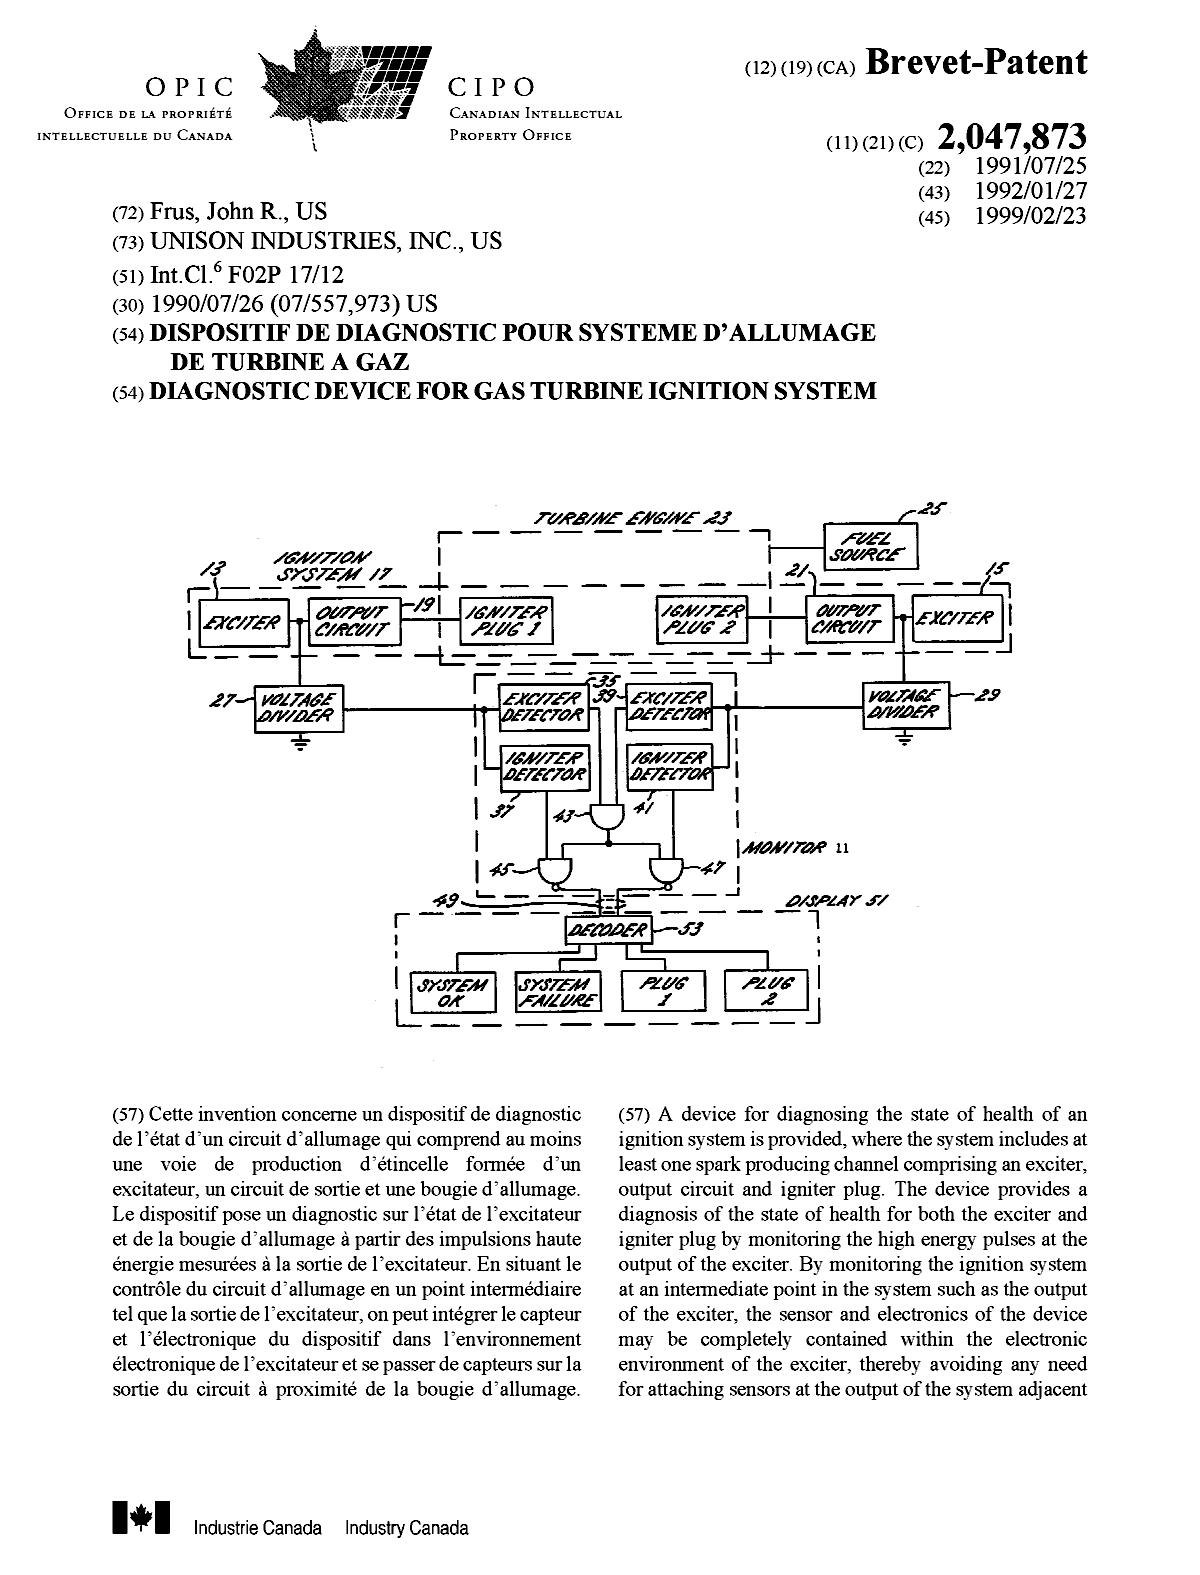 Document de brevet canadien 2047873. Page couverture 19981212. Image 1 de 2